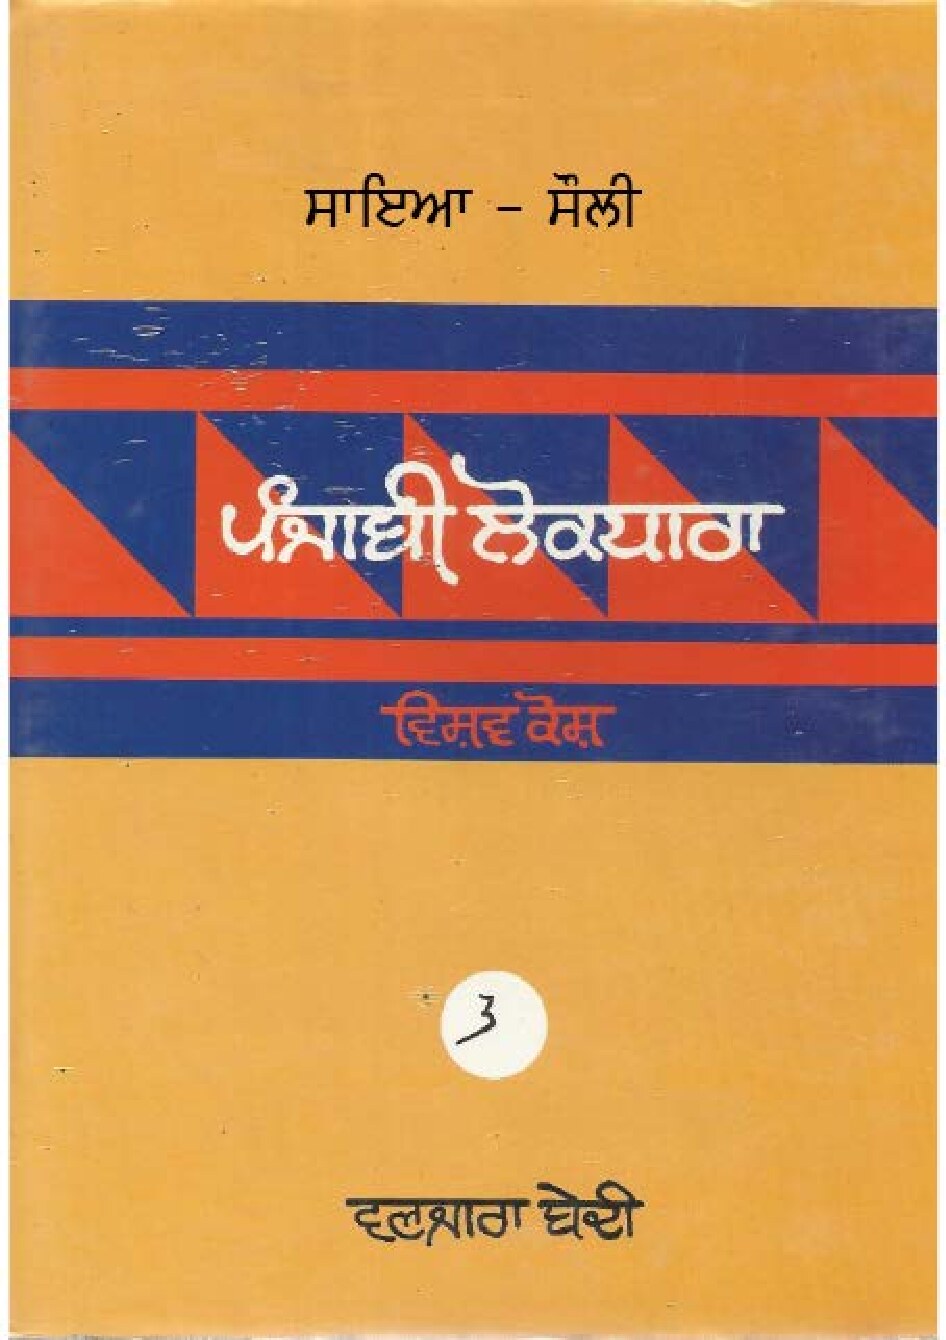 ਪੰਜਾਬੀ ਲੋਕ ਧਾਰਾ - ਵਿਸ਼ਵ ਕੋਸ਼(3) - Punjabi Lok Dhara - Vishav Kosh(3)